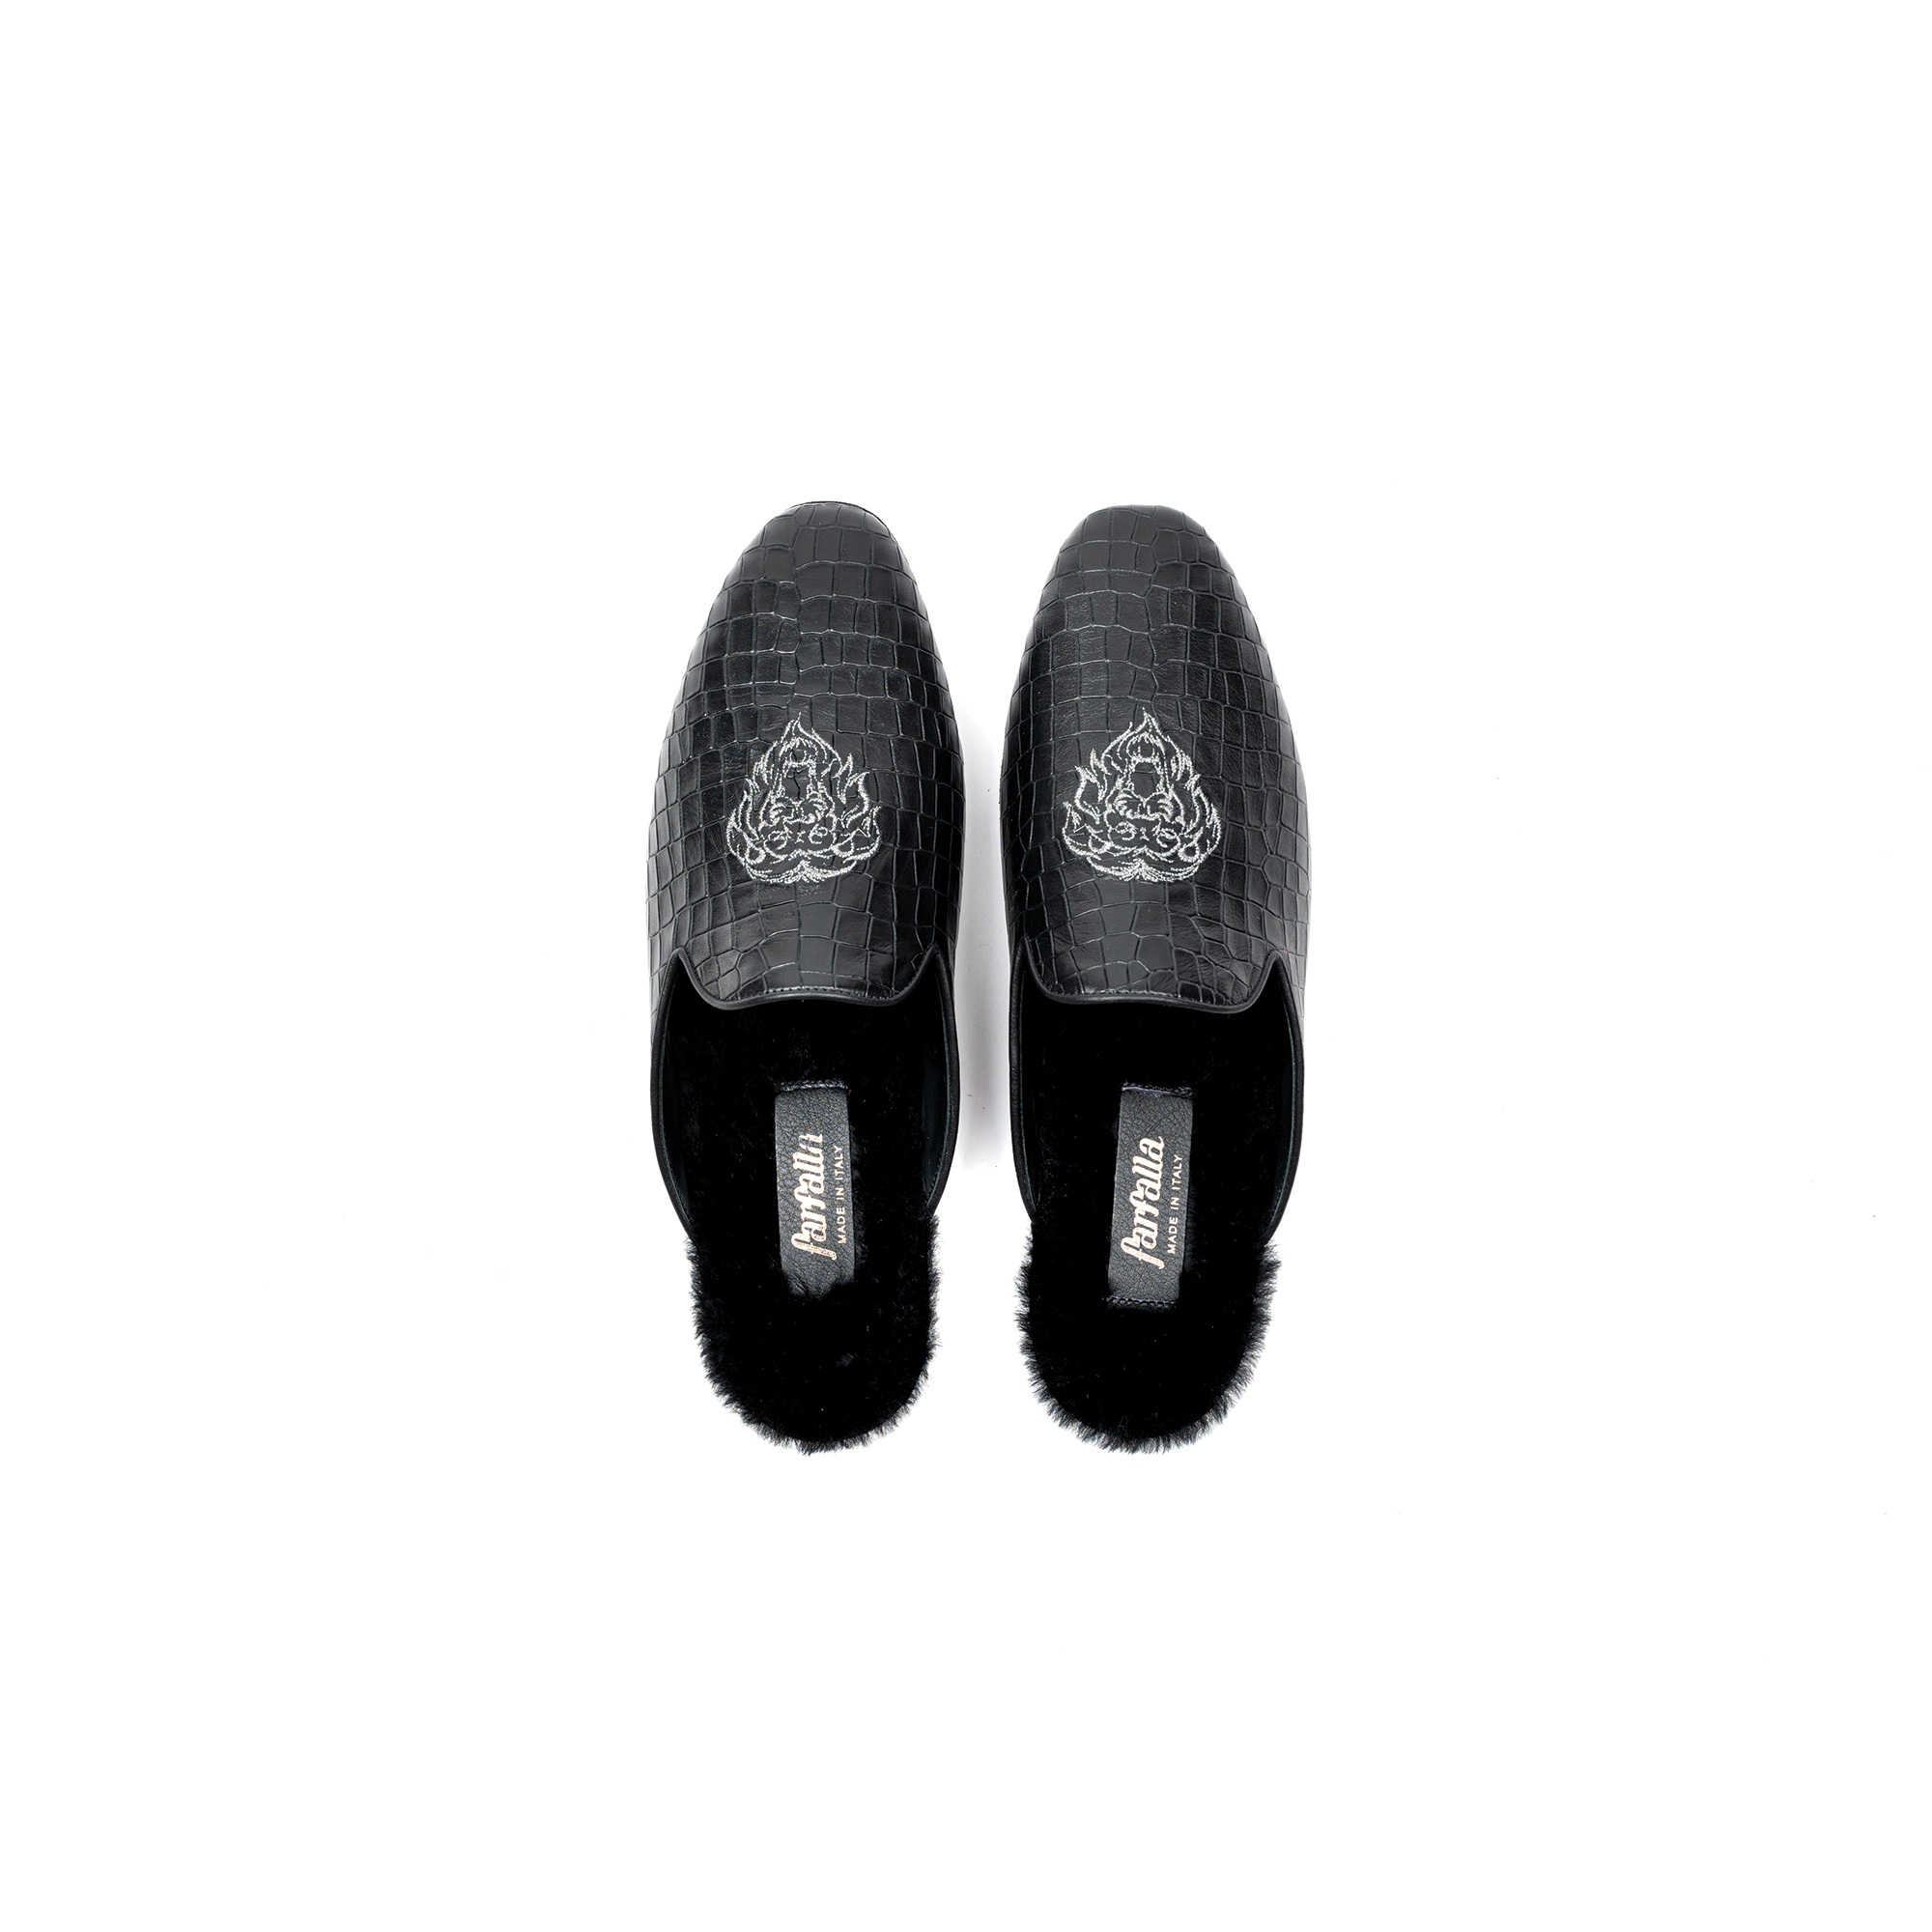 Pantofola interno lusso in pelle stampato cocco nero - Farfalla italian slippers